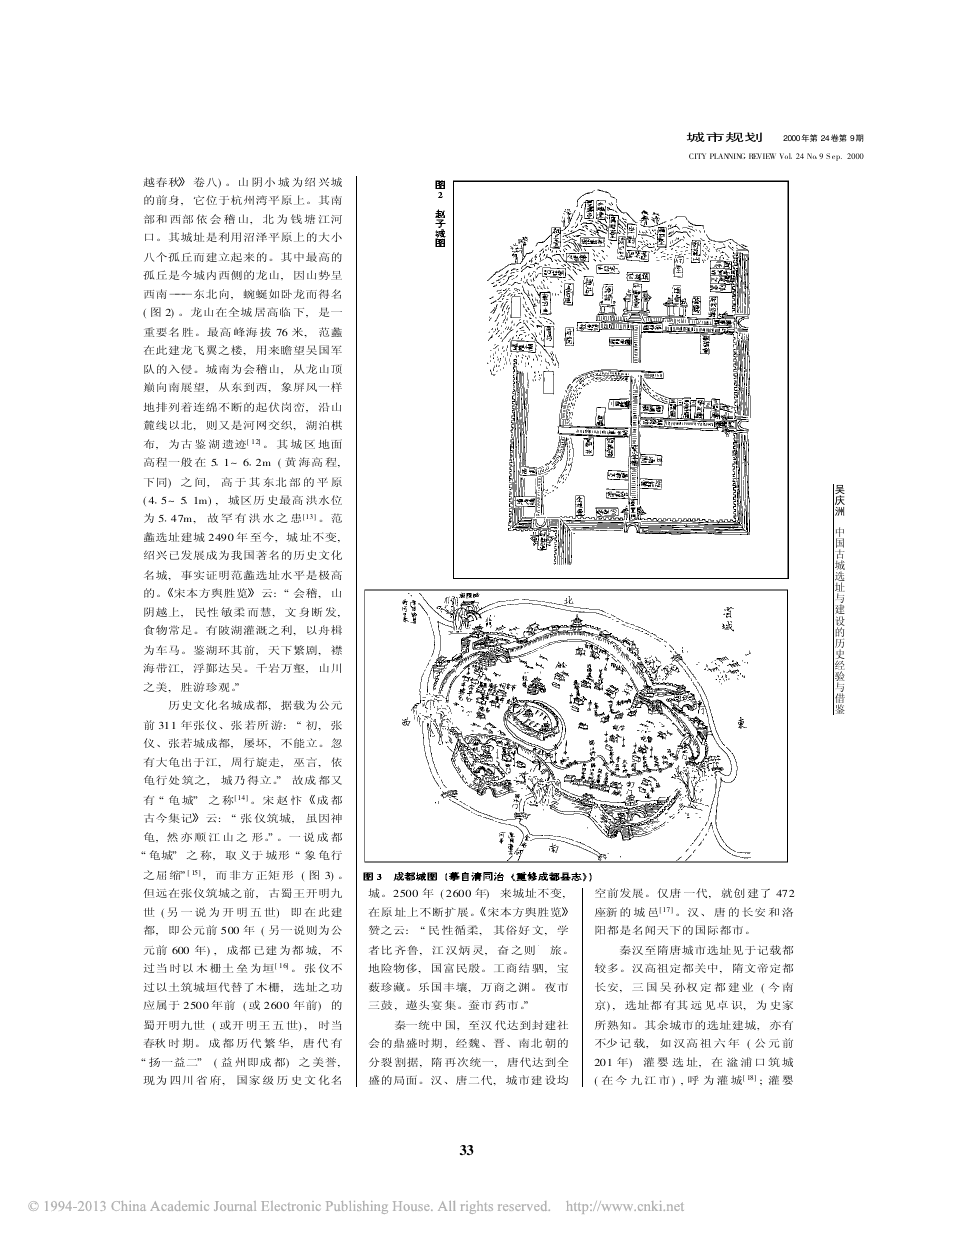 中国古城选址与建设的历史经验与借鉴_上_